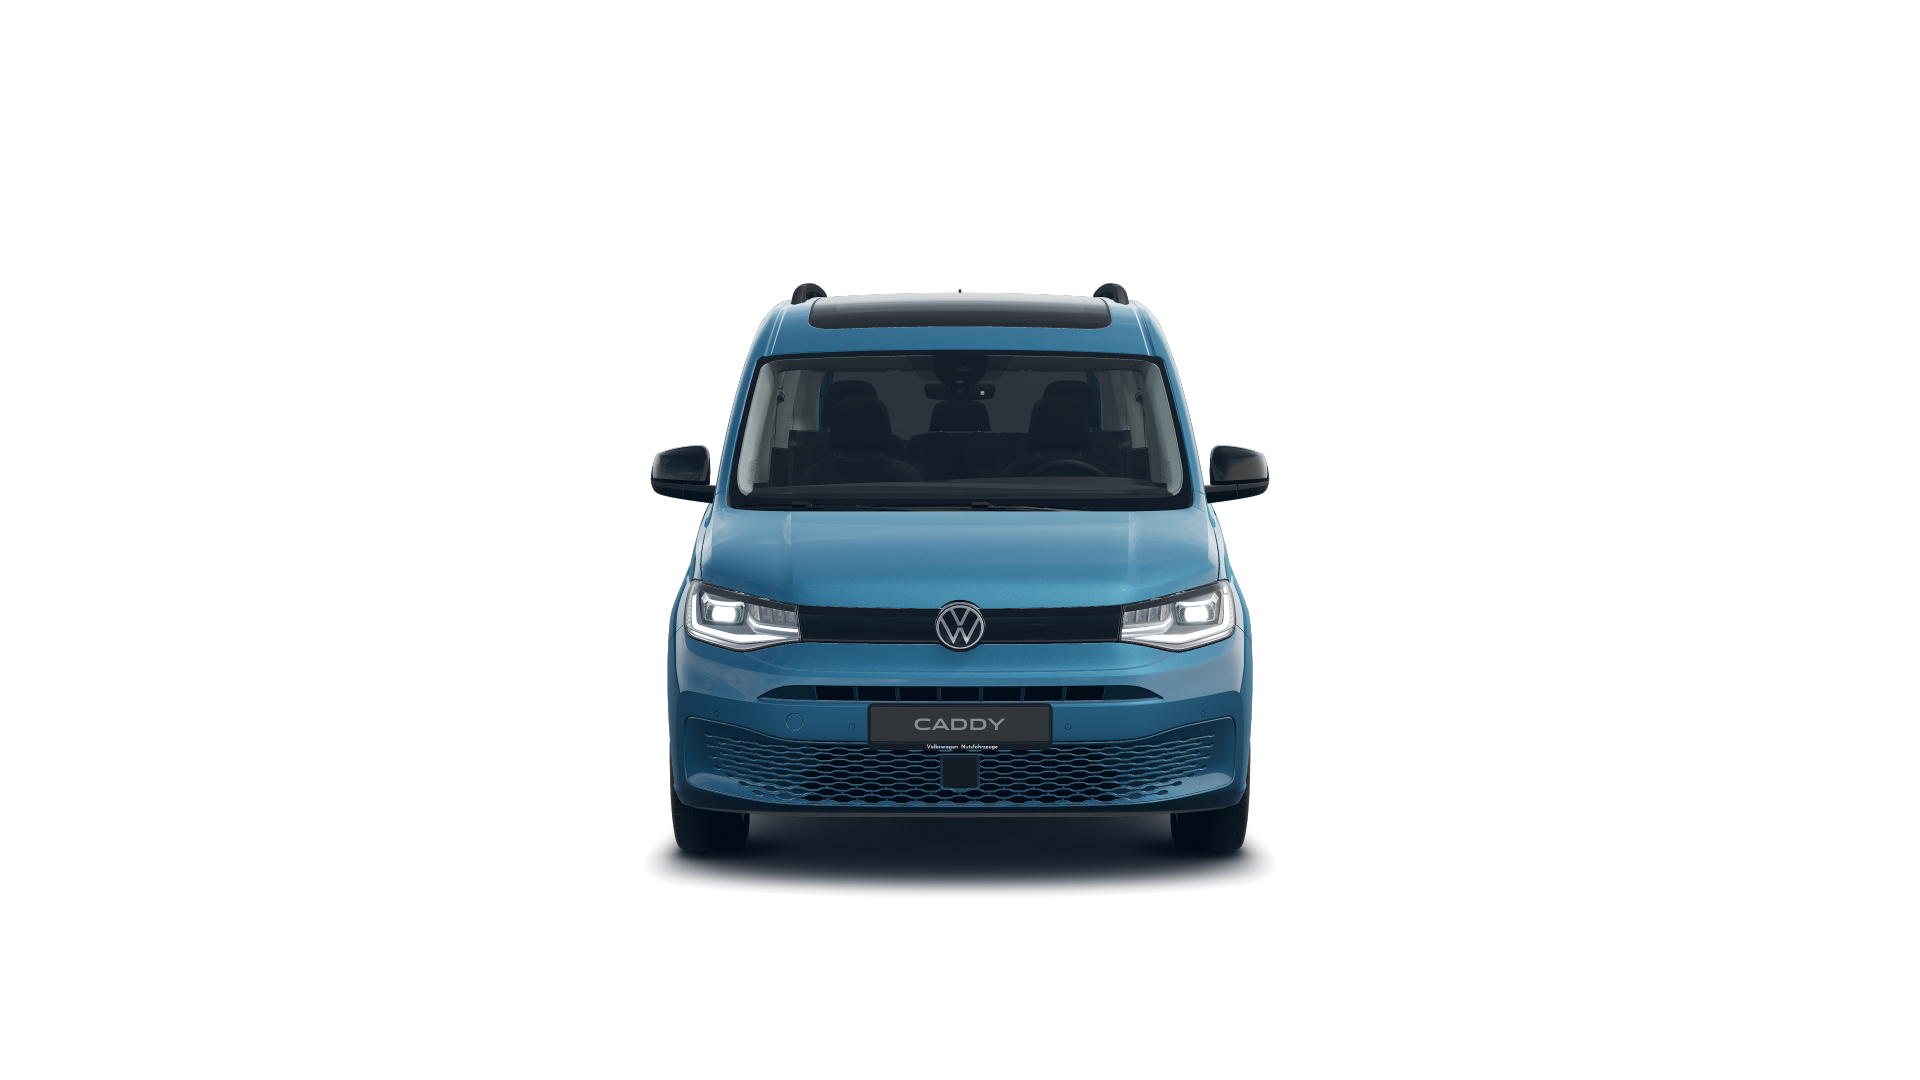 Volkswagen Caddy Outdoor 2.0 TDI 75 kW (102 CV)